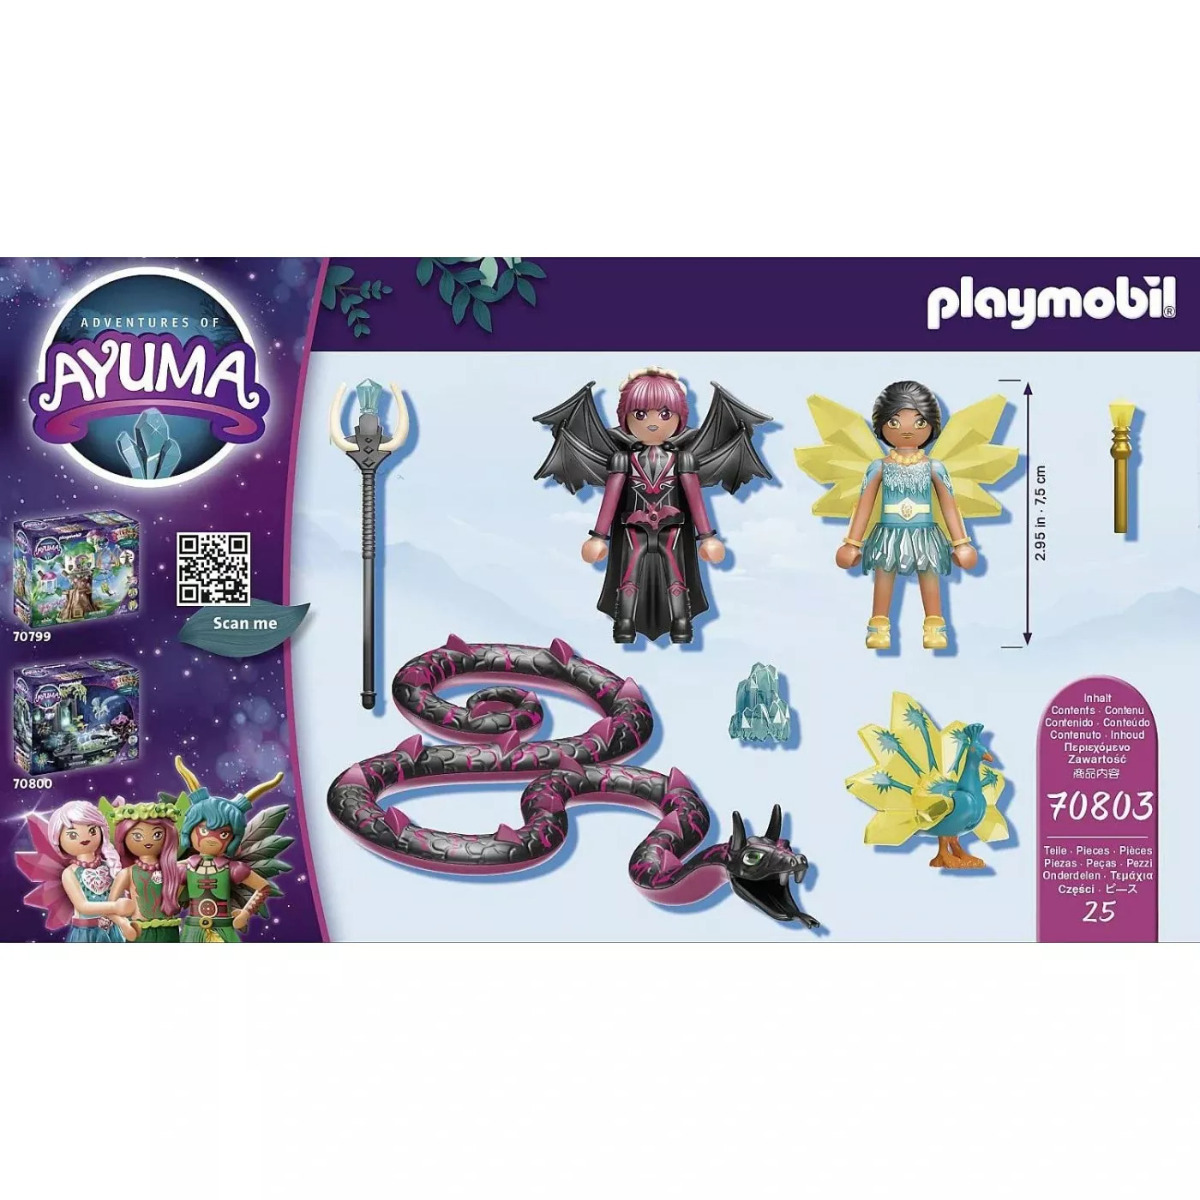 Playmobil Ayuma Crystal Fairy και Bat Fairy με μαγικά ζώα για 7-12 ετών ...